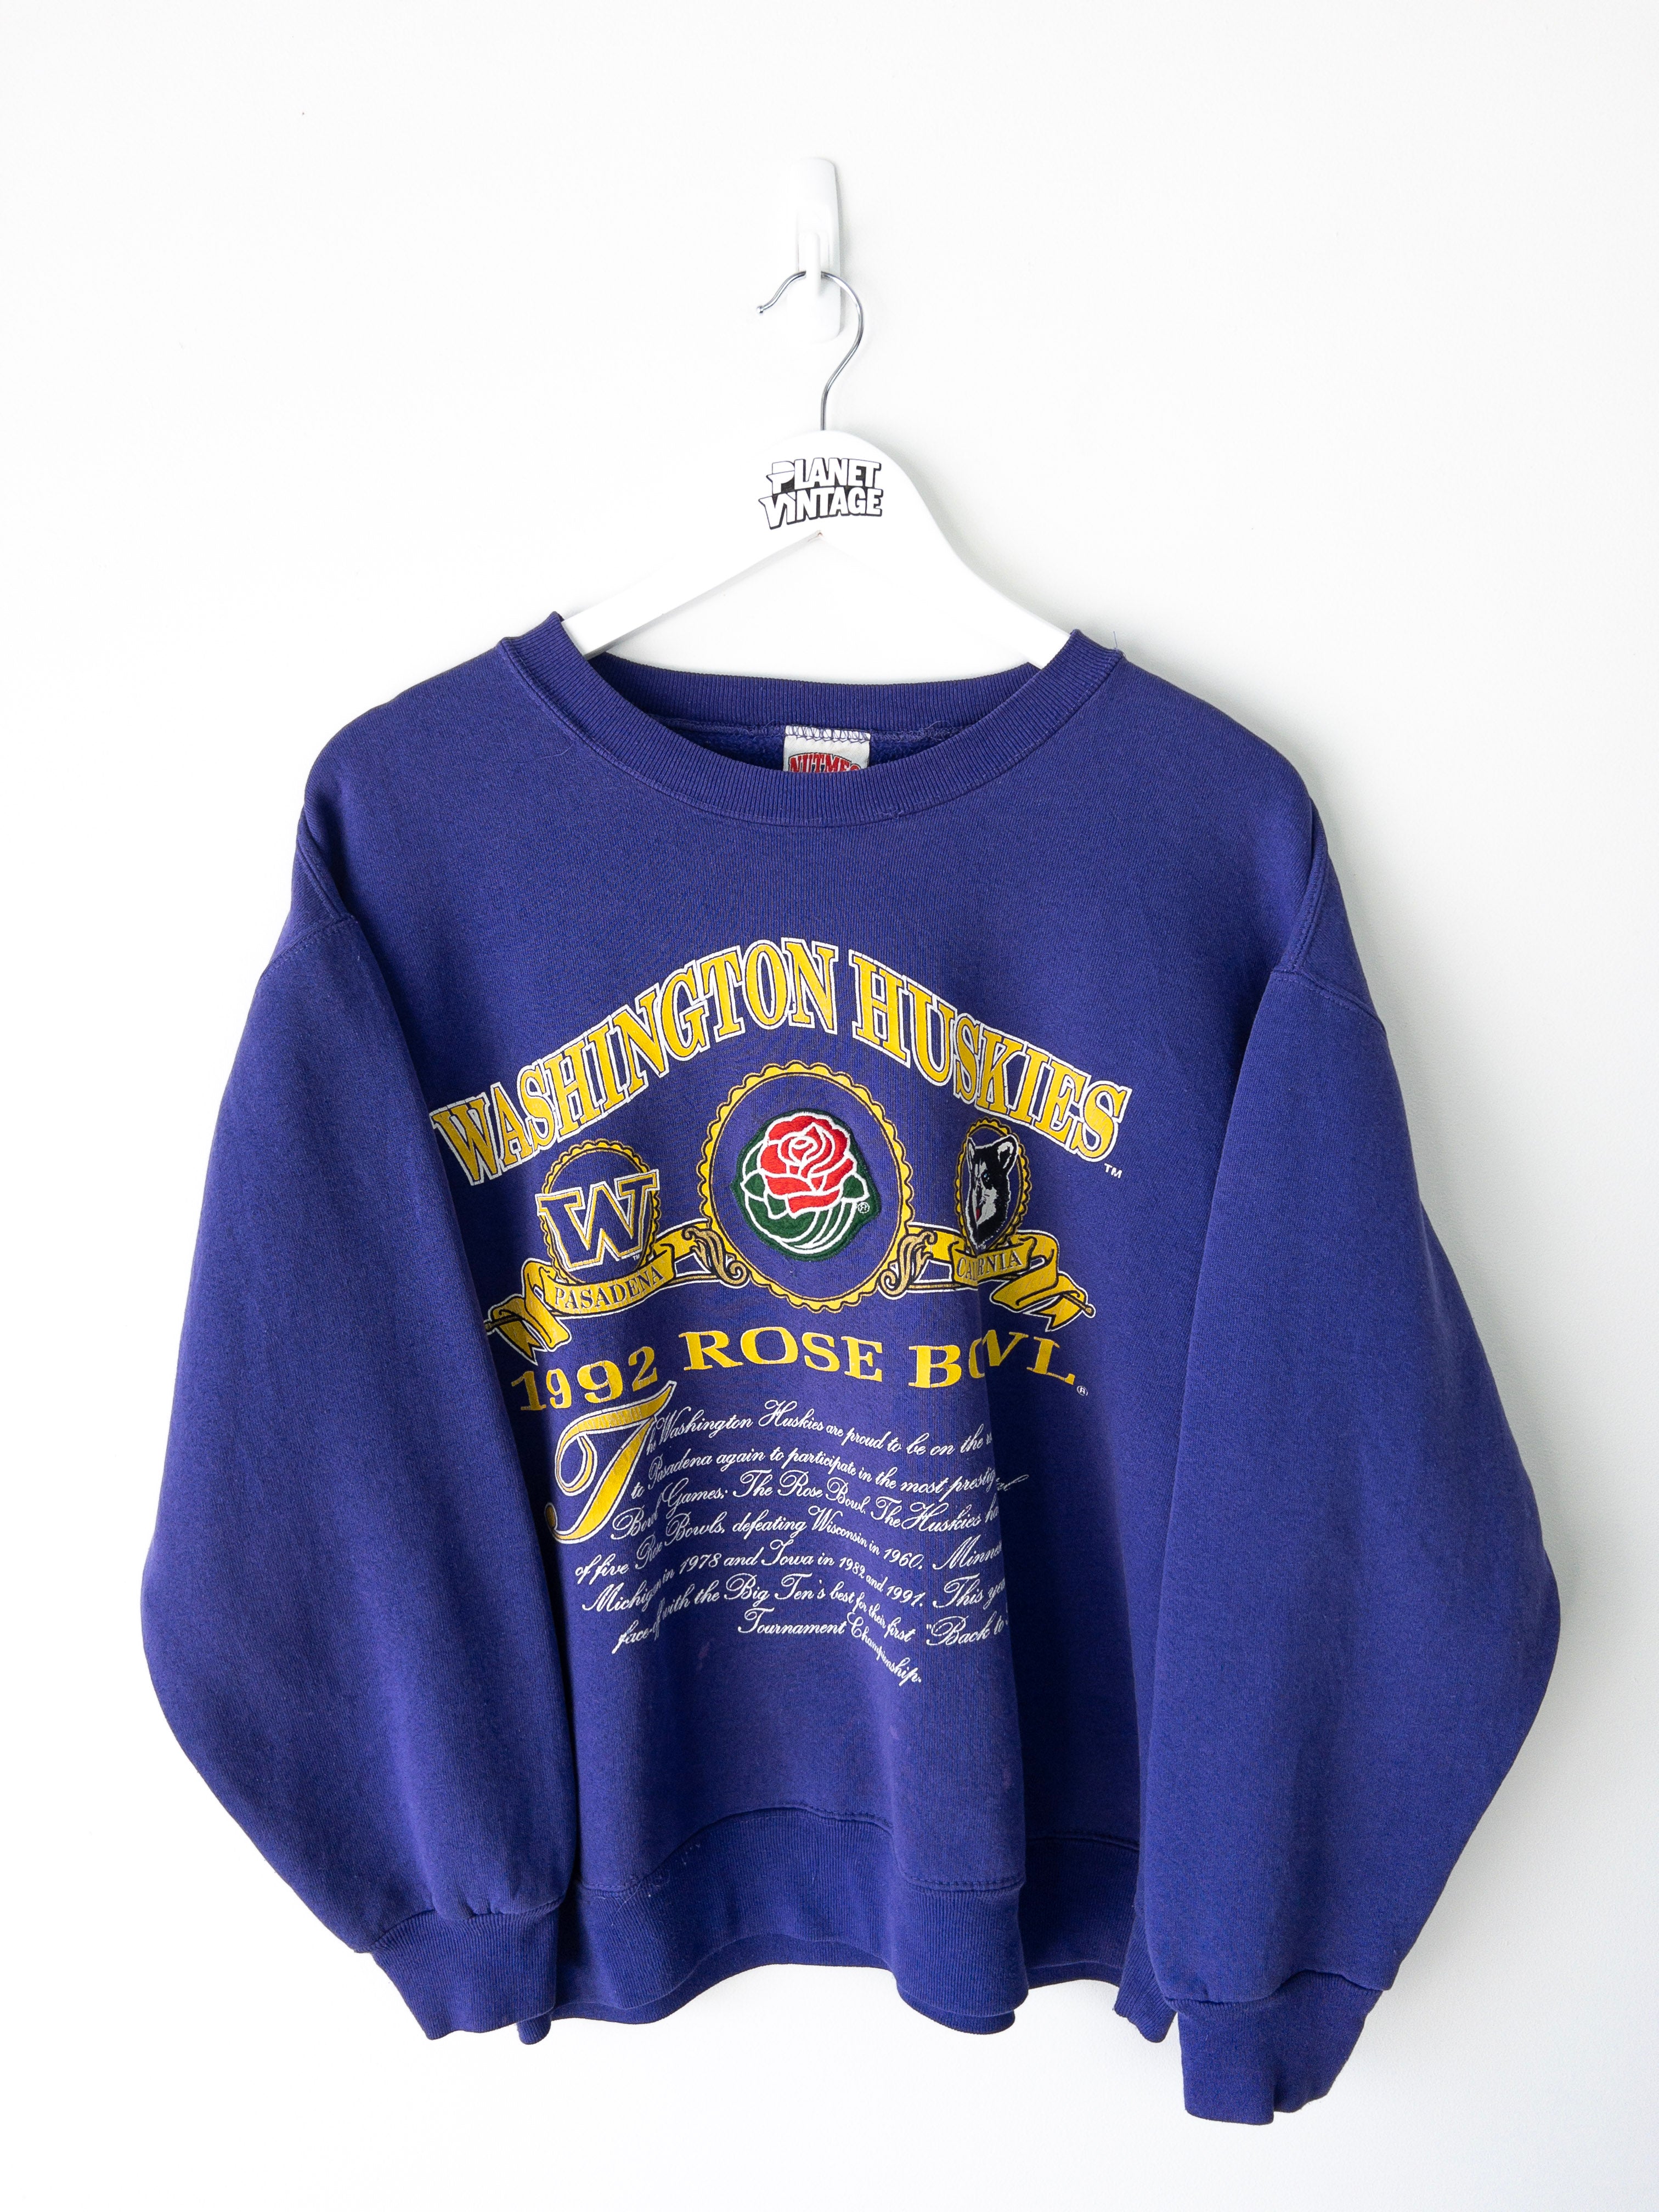 Vintage Washington Huskies Rose Bowl 1992 Sweatshirt (M)